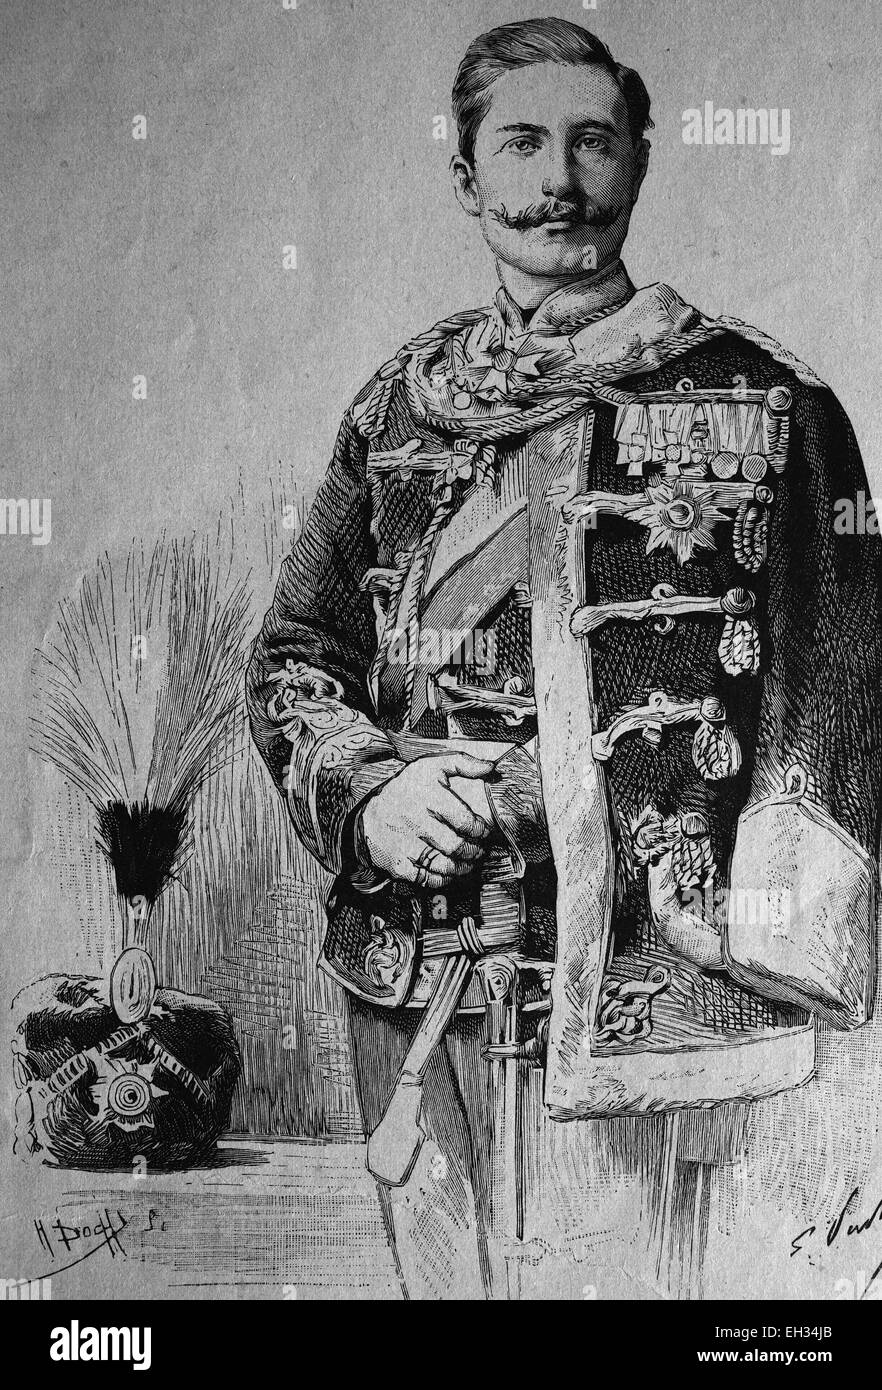 Wilhelm, Kronprinz des Deutschen Reichs, Wilhelm II., sein voller Name war Friedrich Wilhelm Viktor Albert von Preußen, 1859-1941, Hohenzollern-Dynastie, er war der letzte deutsche Kaiser von 1888 bis 1918 und König von Preußen, Holzschnitt 1888 Stockfoto